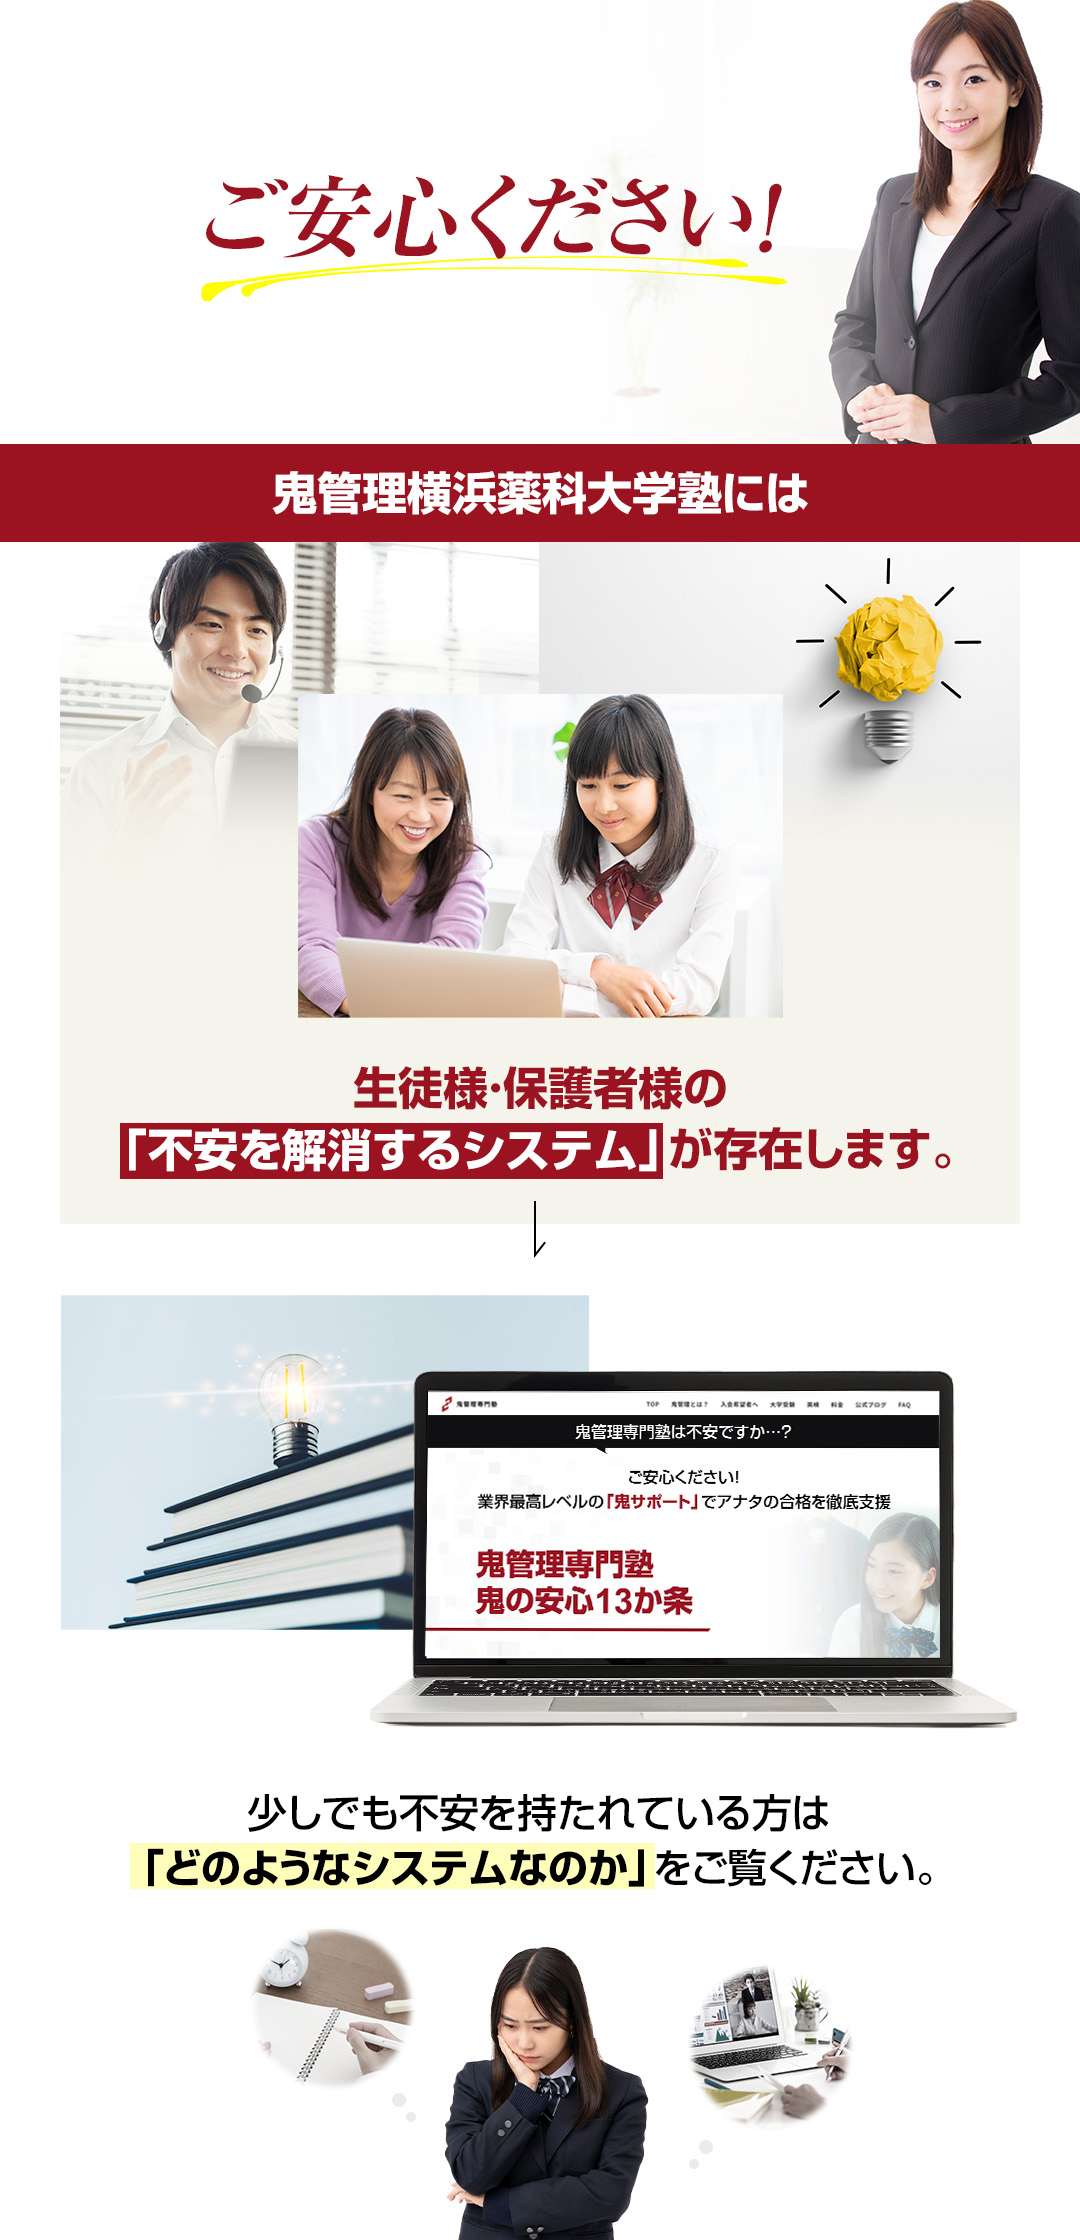 鬼管理横浜薬科大学塾には生徒様・保護者様の「不安を解消するシステム」が存在します